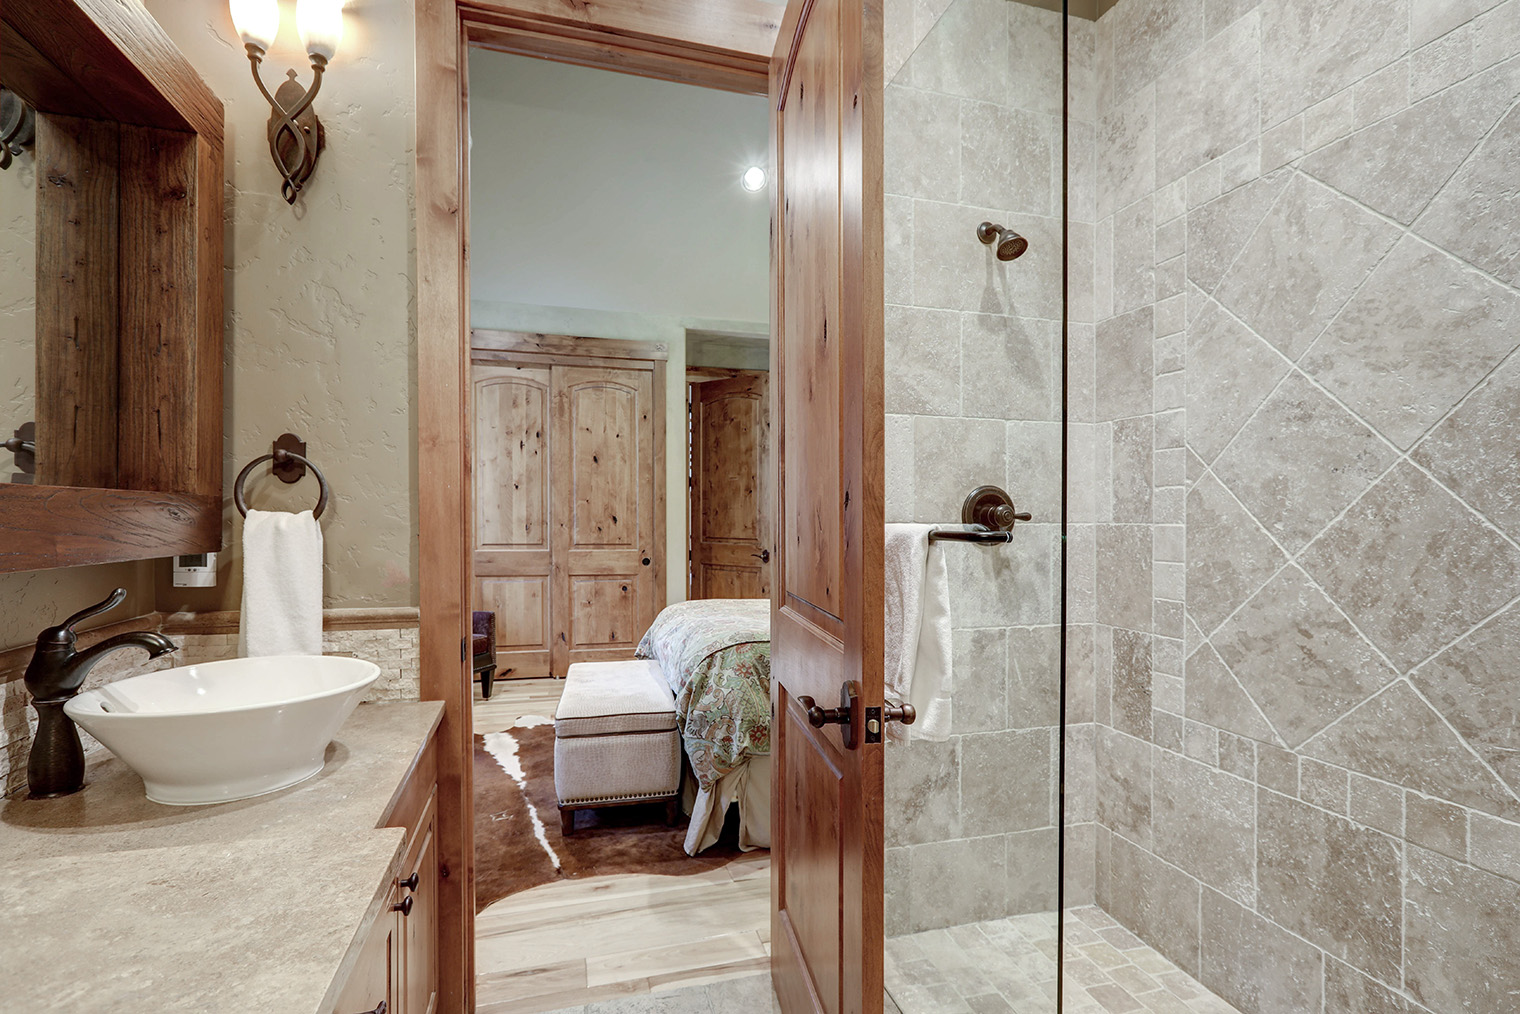 Хорошо, когда есть приватная ванная комната с доступом из спальни: не нужно ходить ночью через весь этаж. Фотография: Artazum / Shutterstock